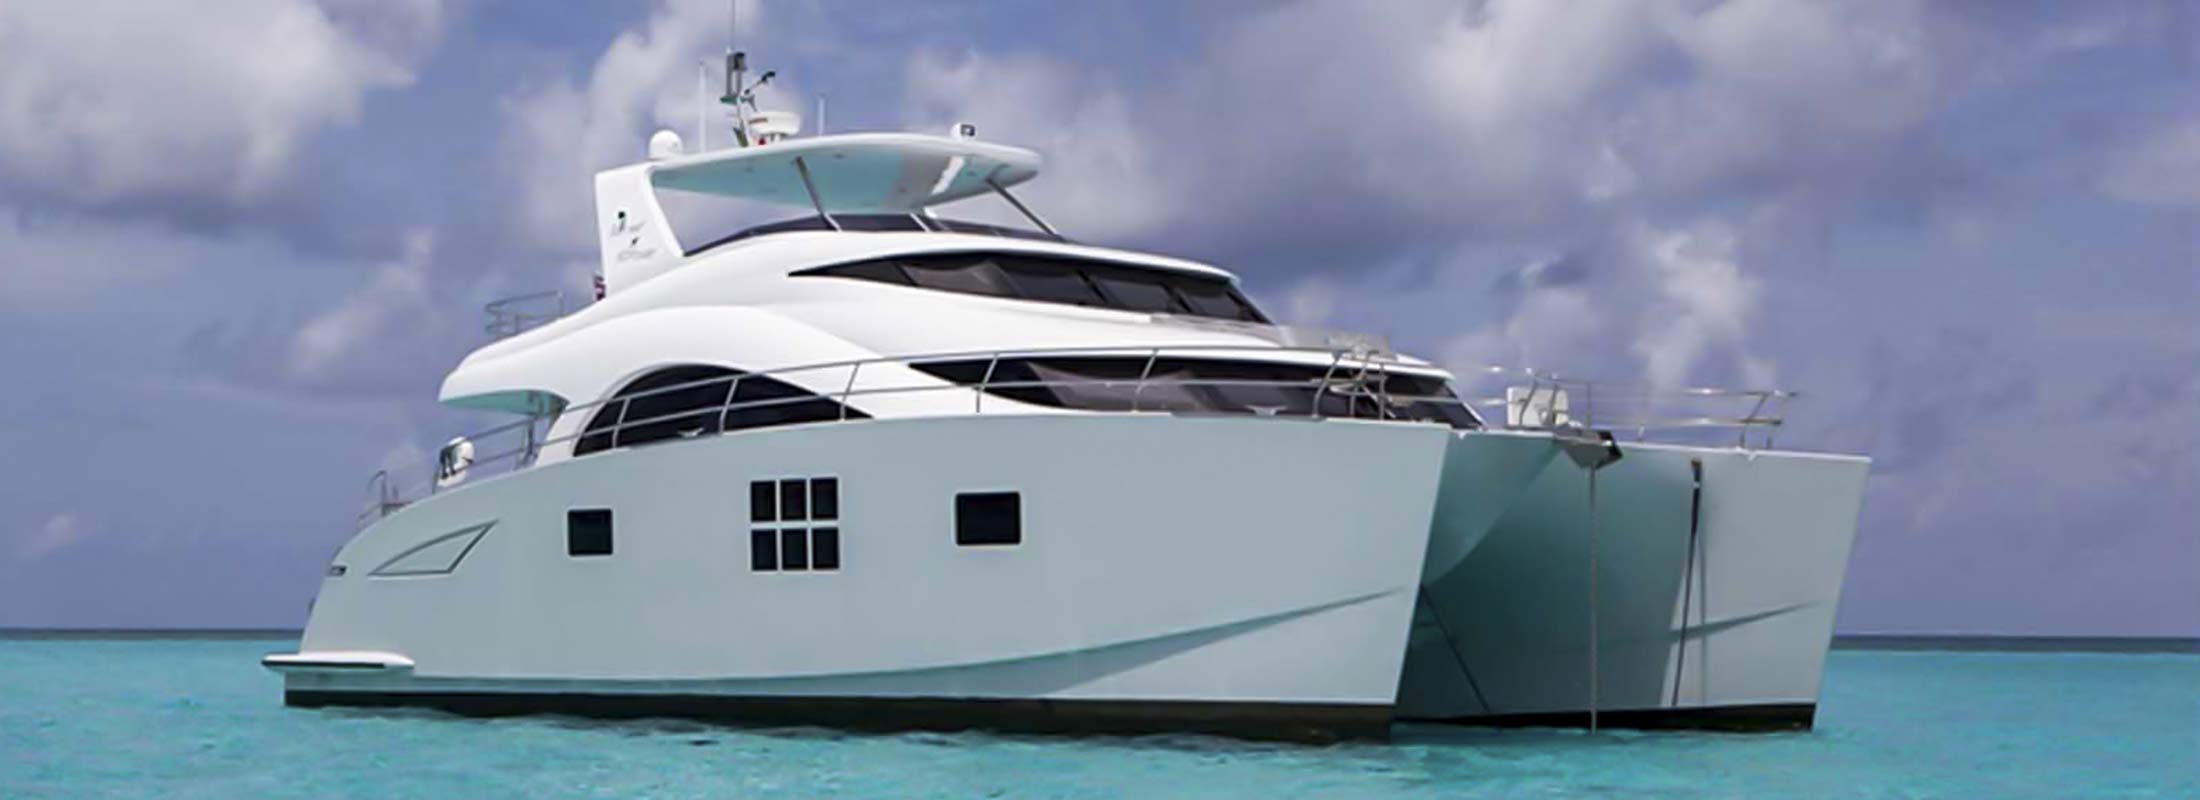 Forever Motor Yacht for Charter Miami Alaska Florida slider 1